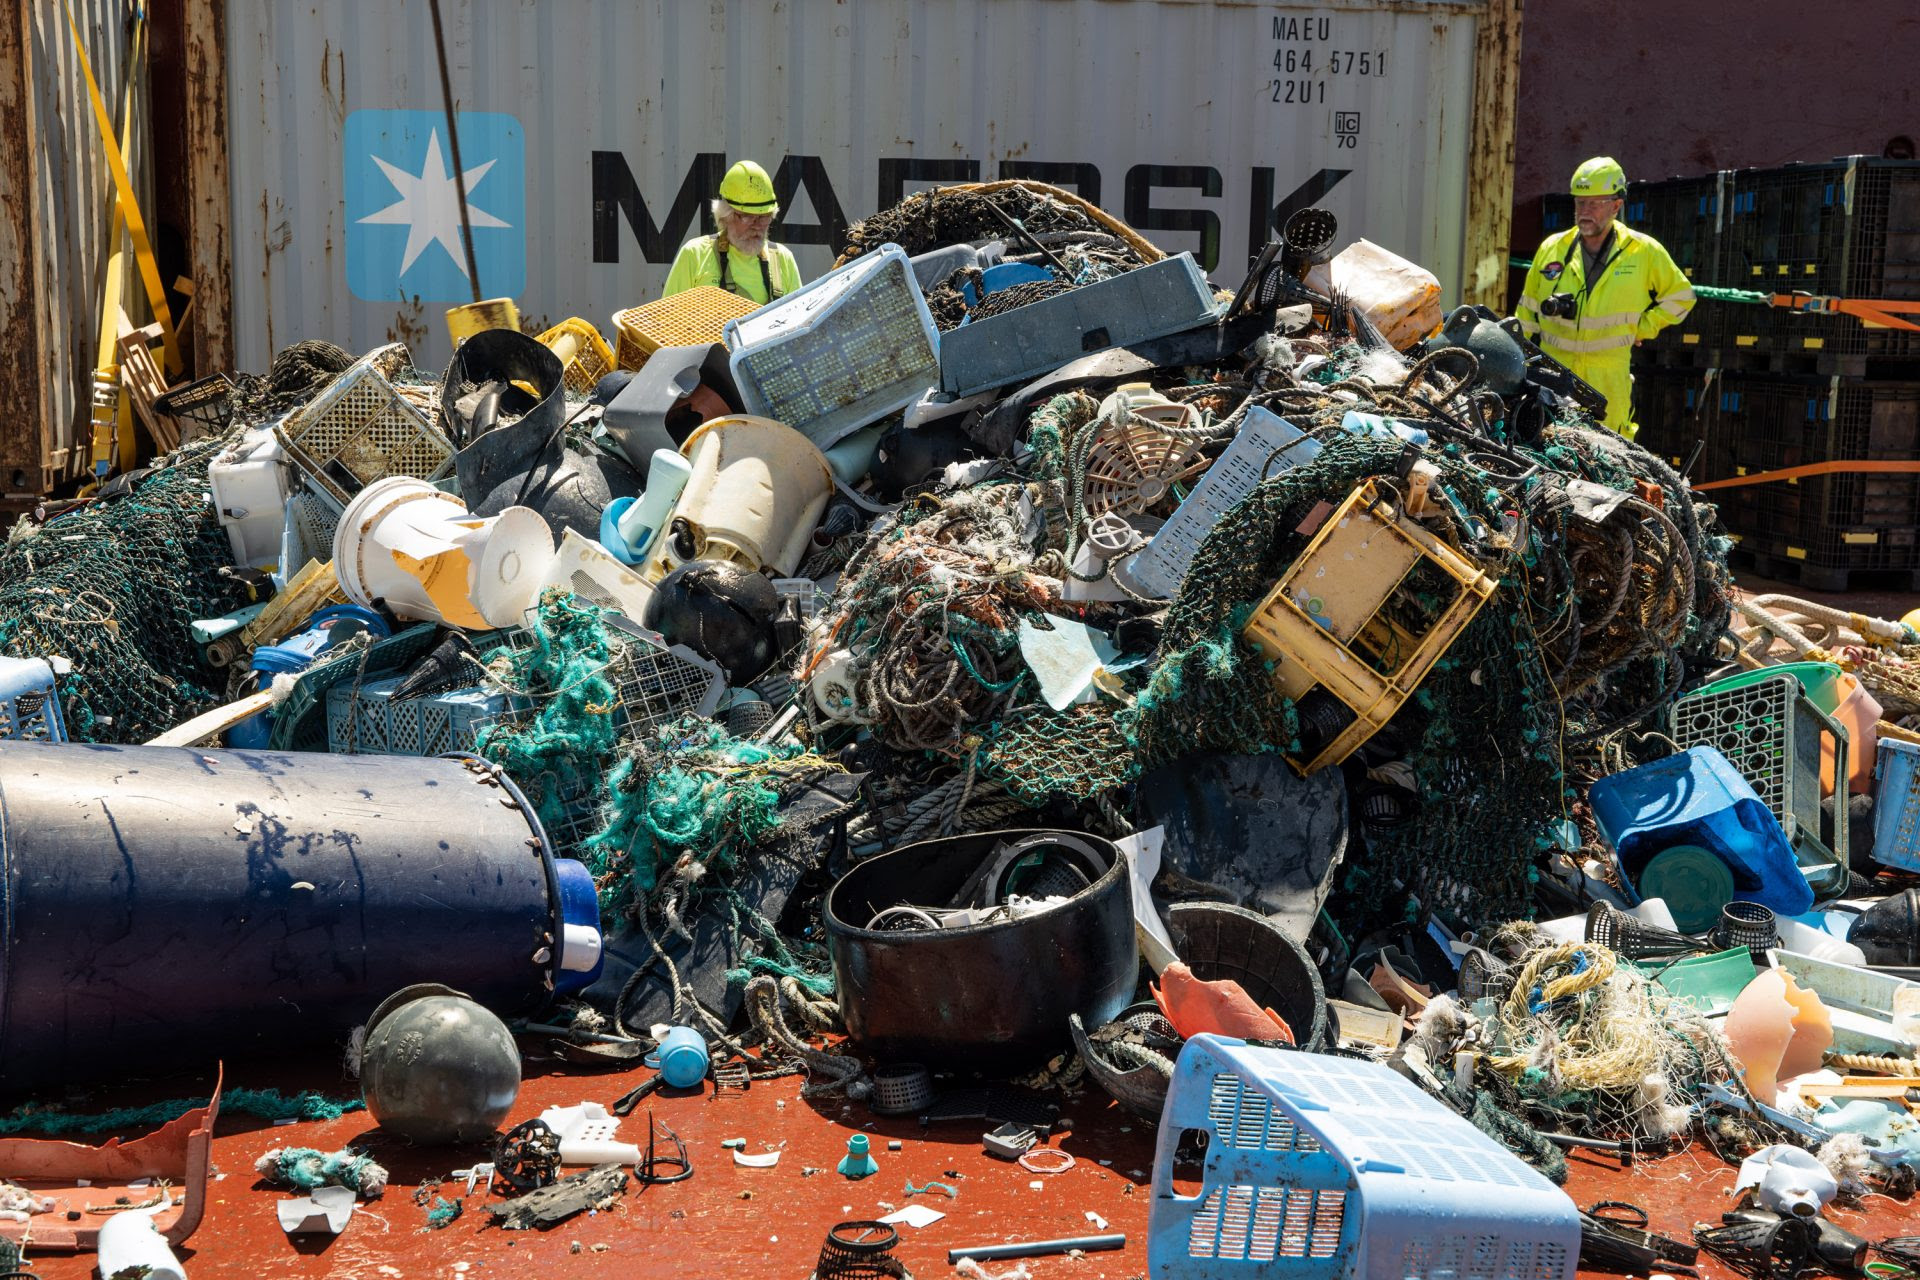 Coleta no mar: como jovem holandês pretende limpar 80% do lixo dos